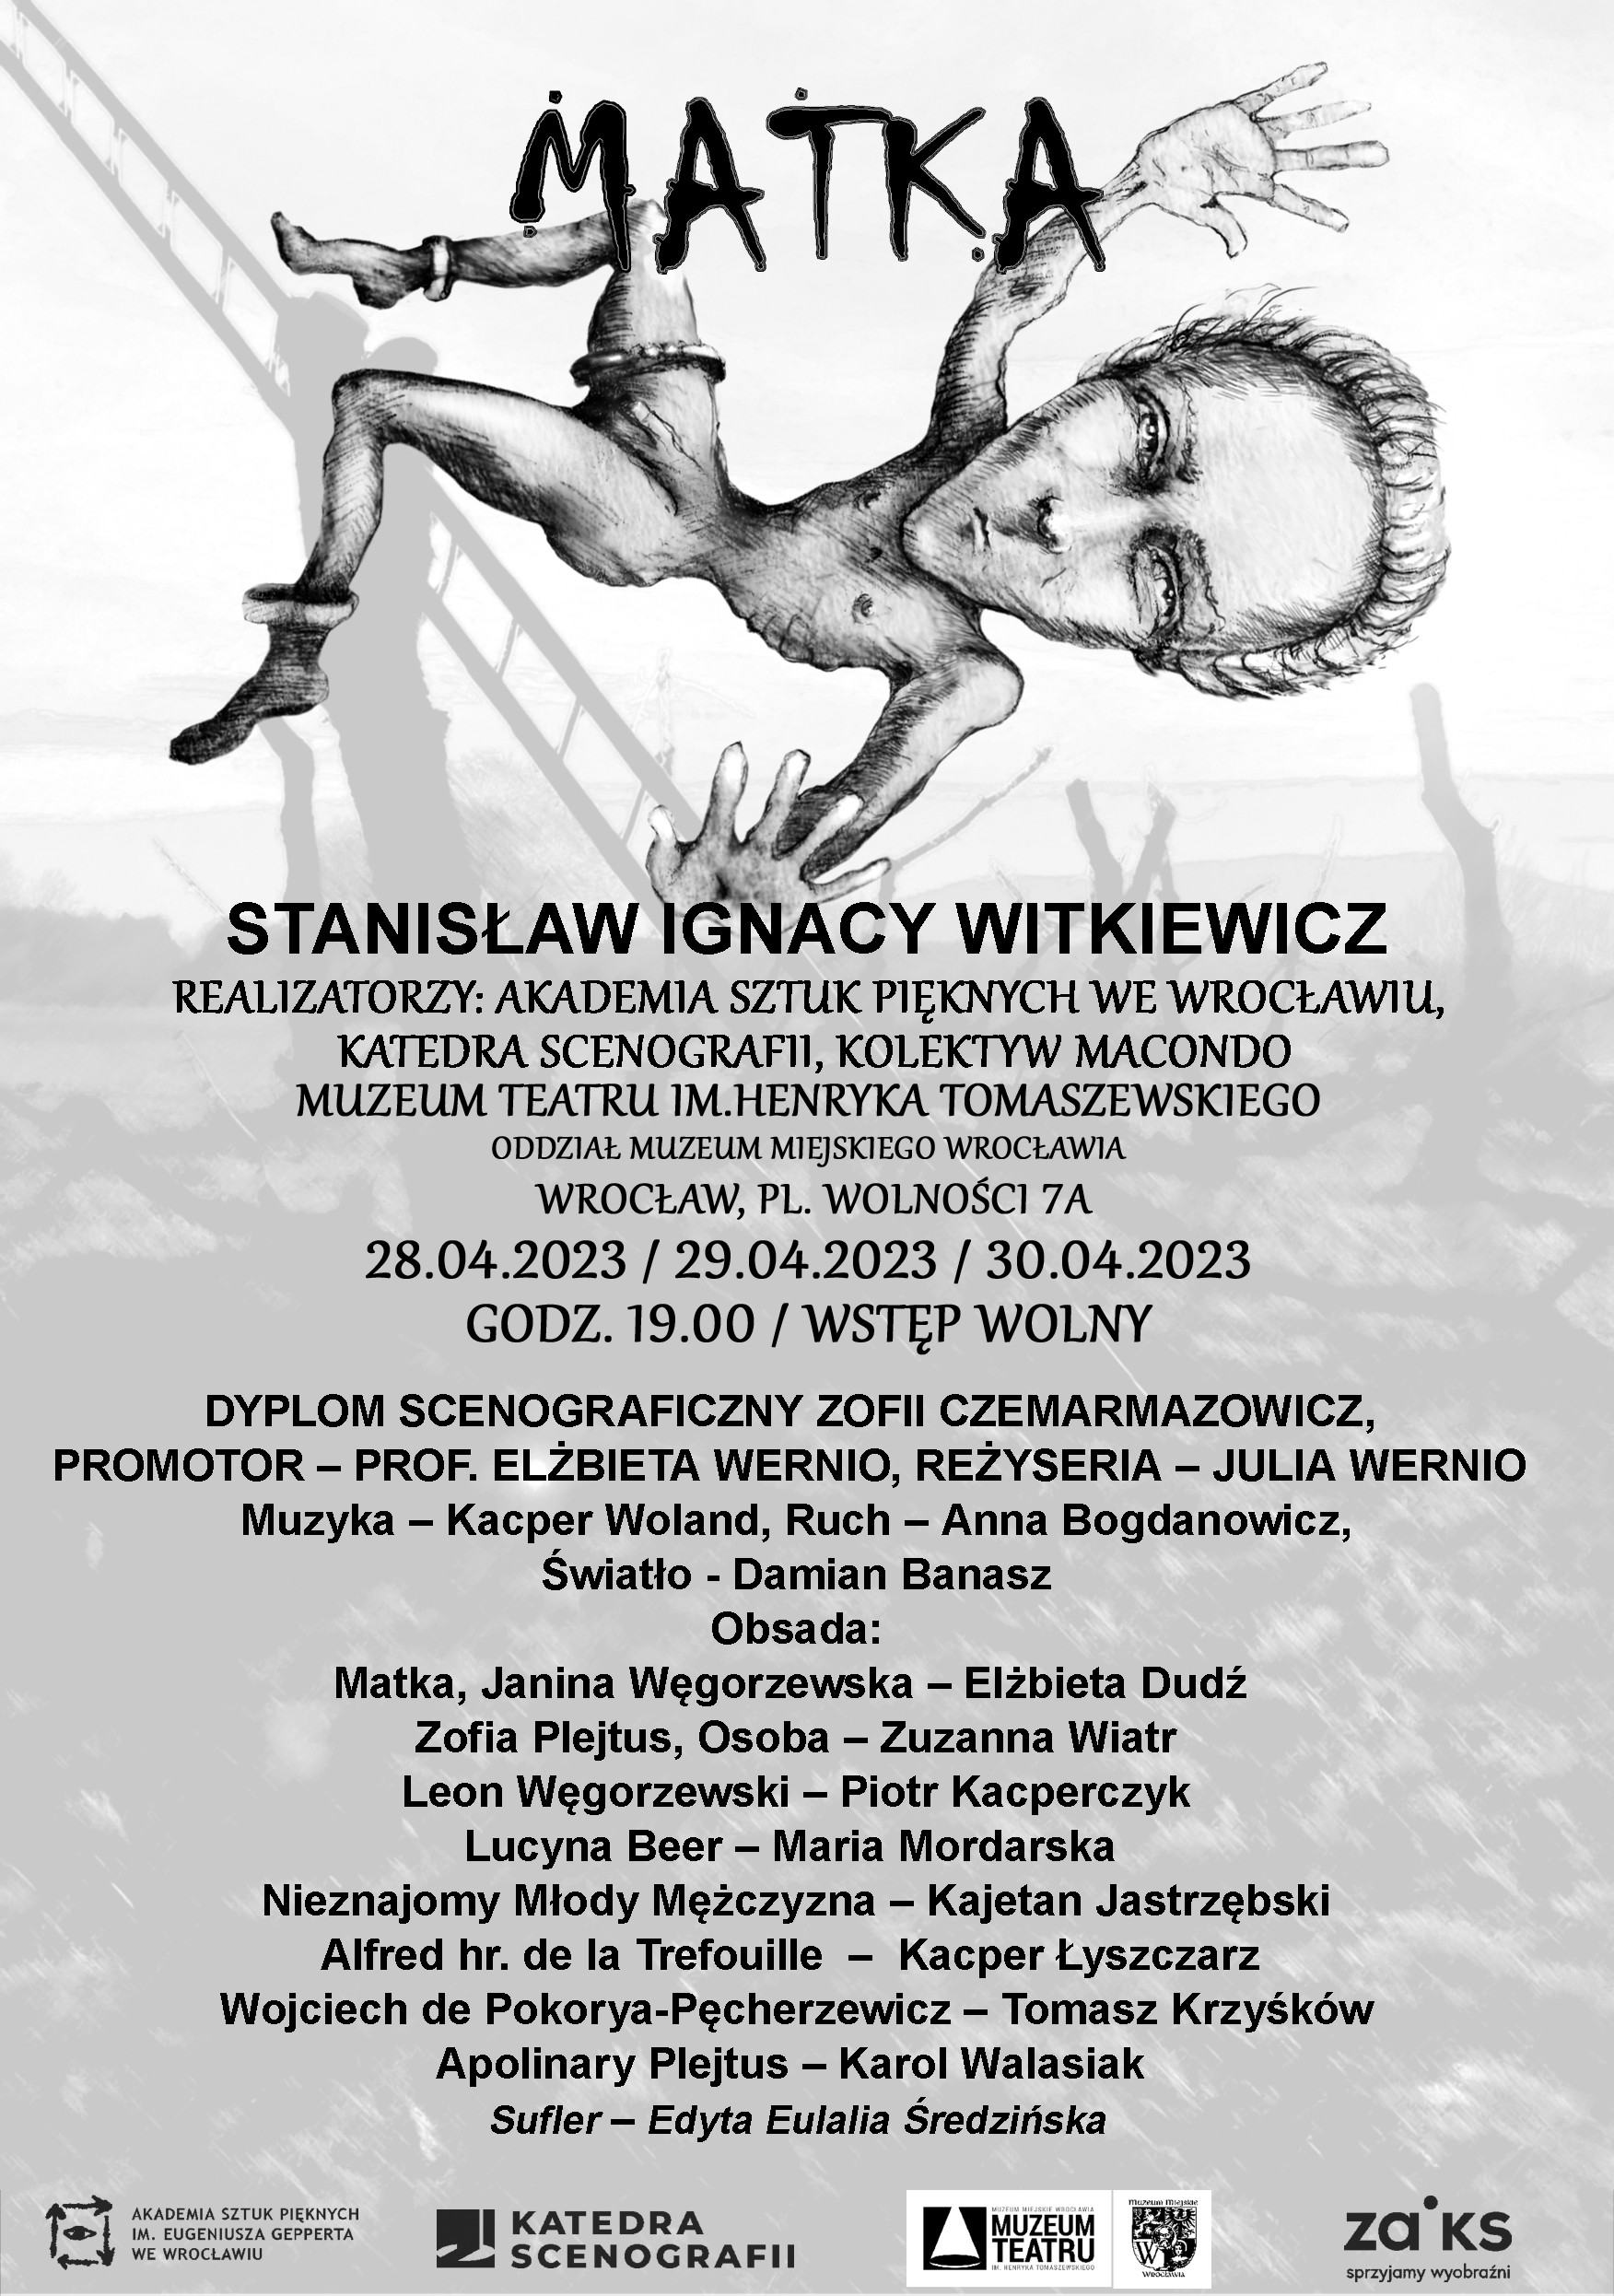 Matka / Stanisław Ignacy Witkiewicz